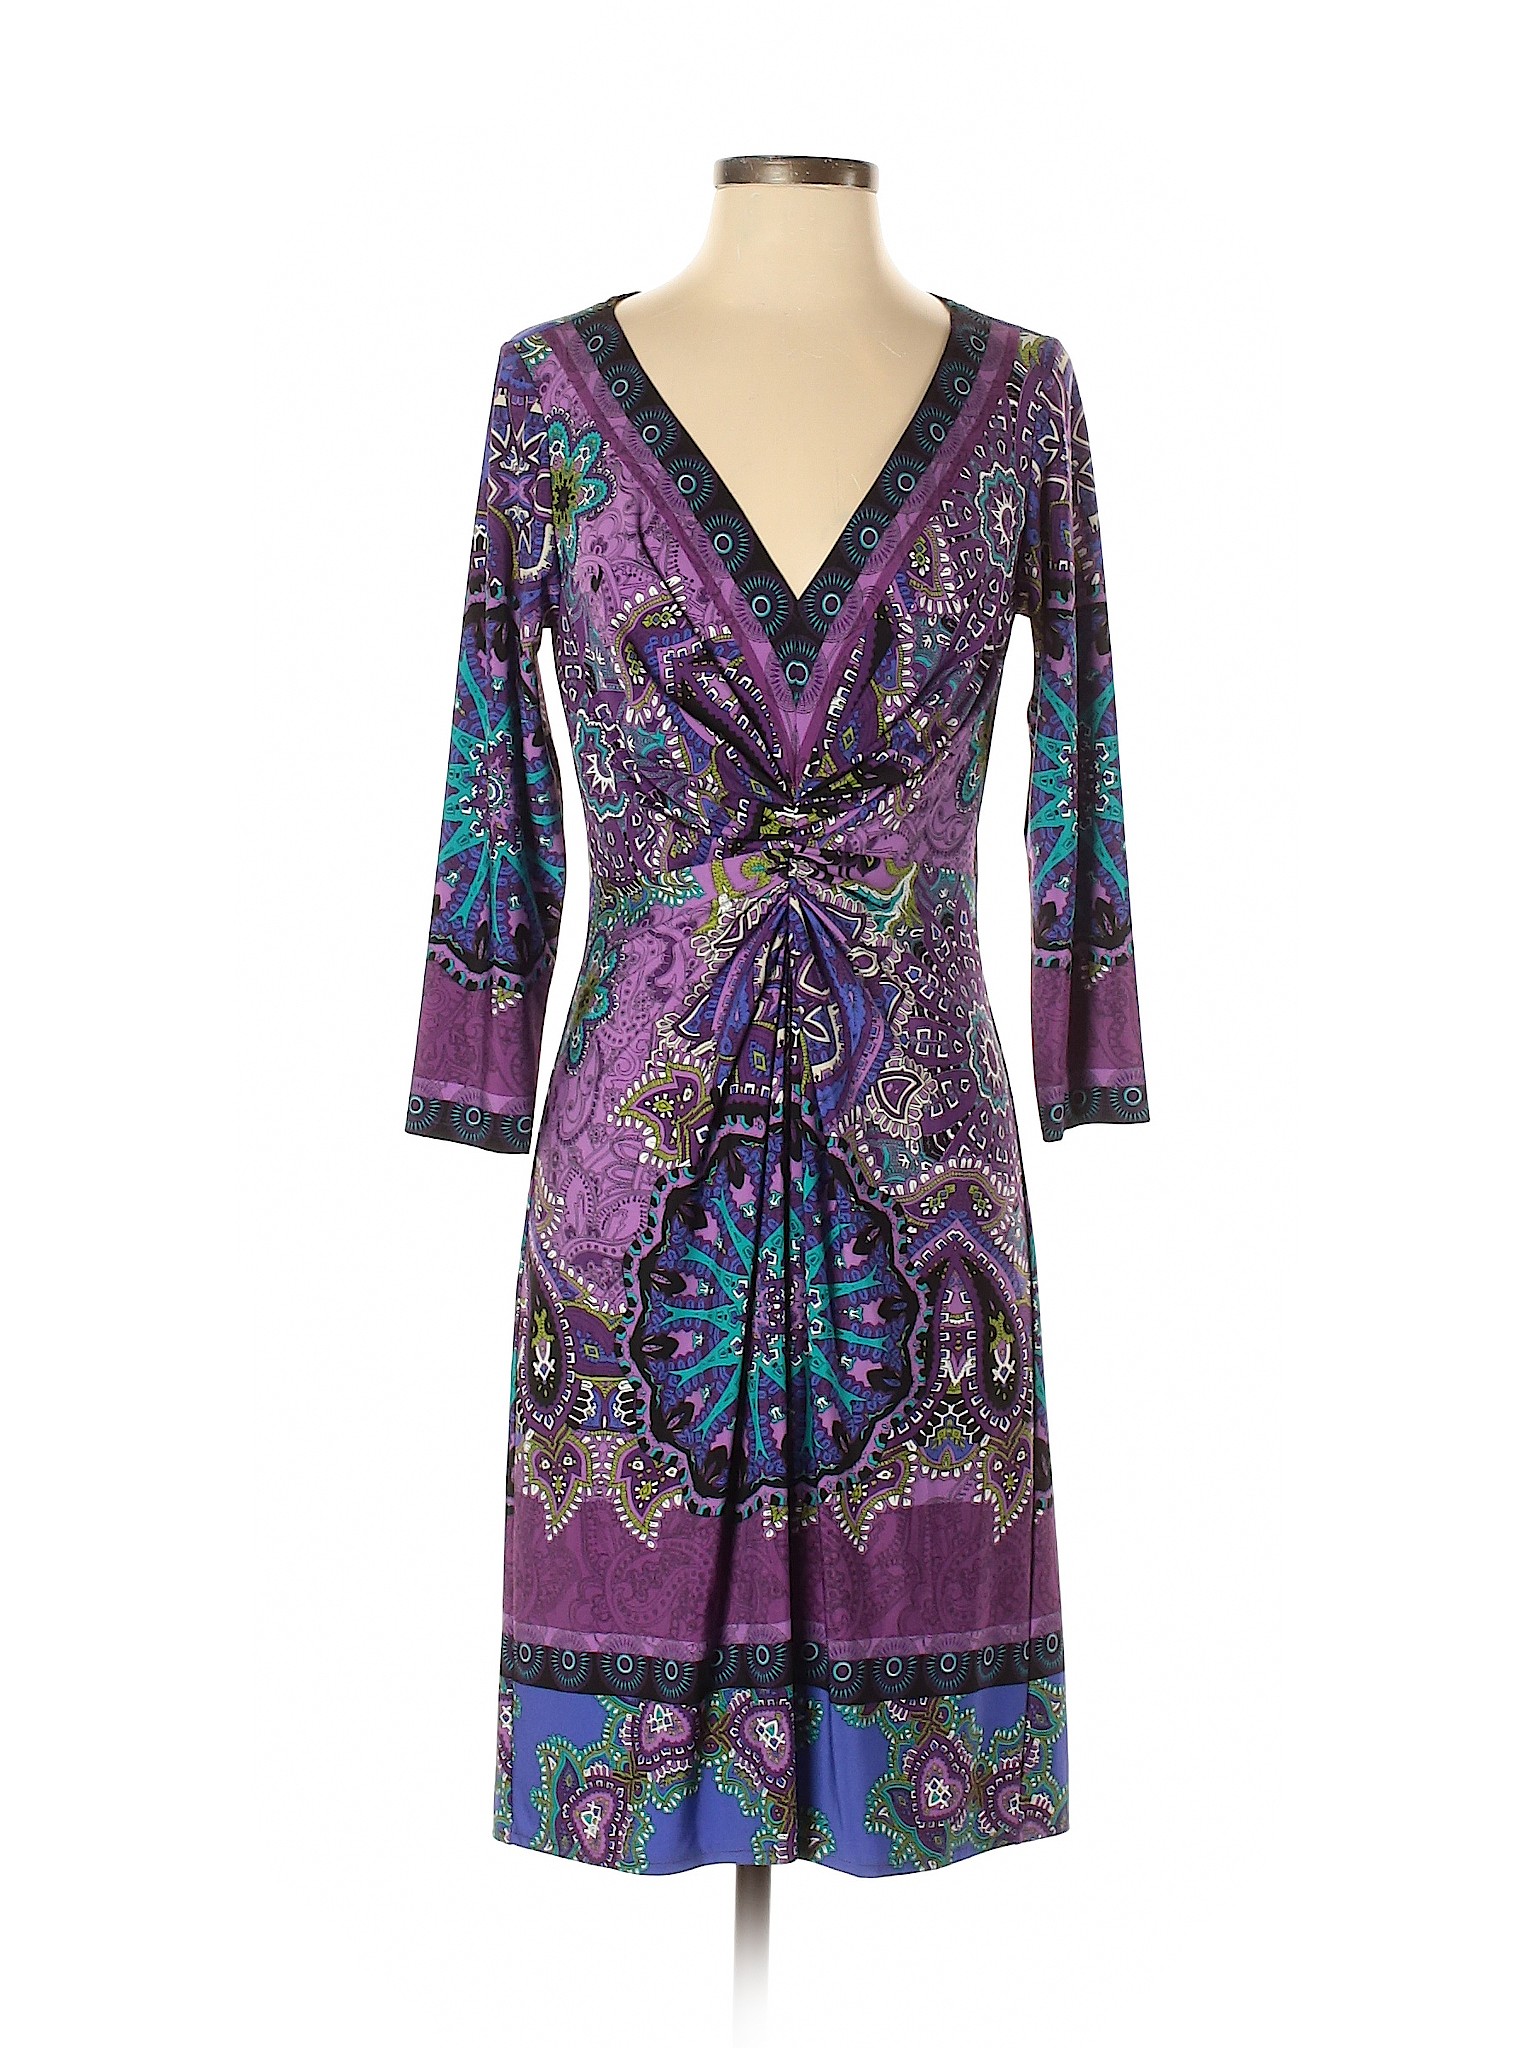 Muse Women Purple Casual Dress 4 | eBay